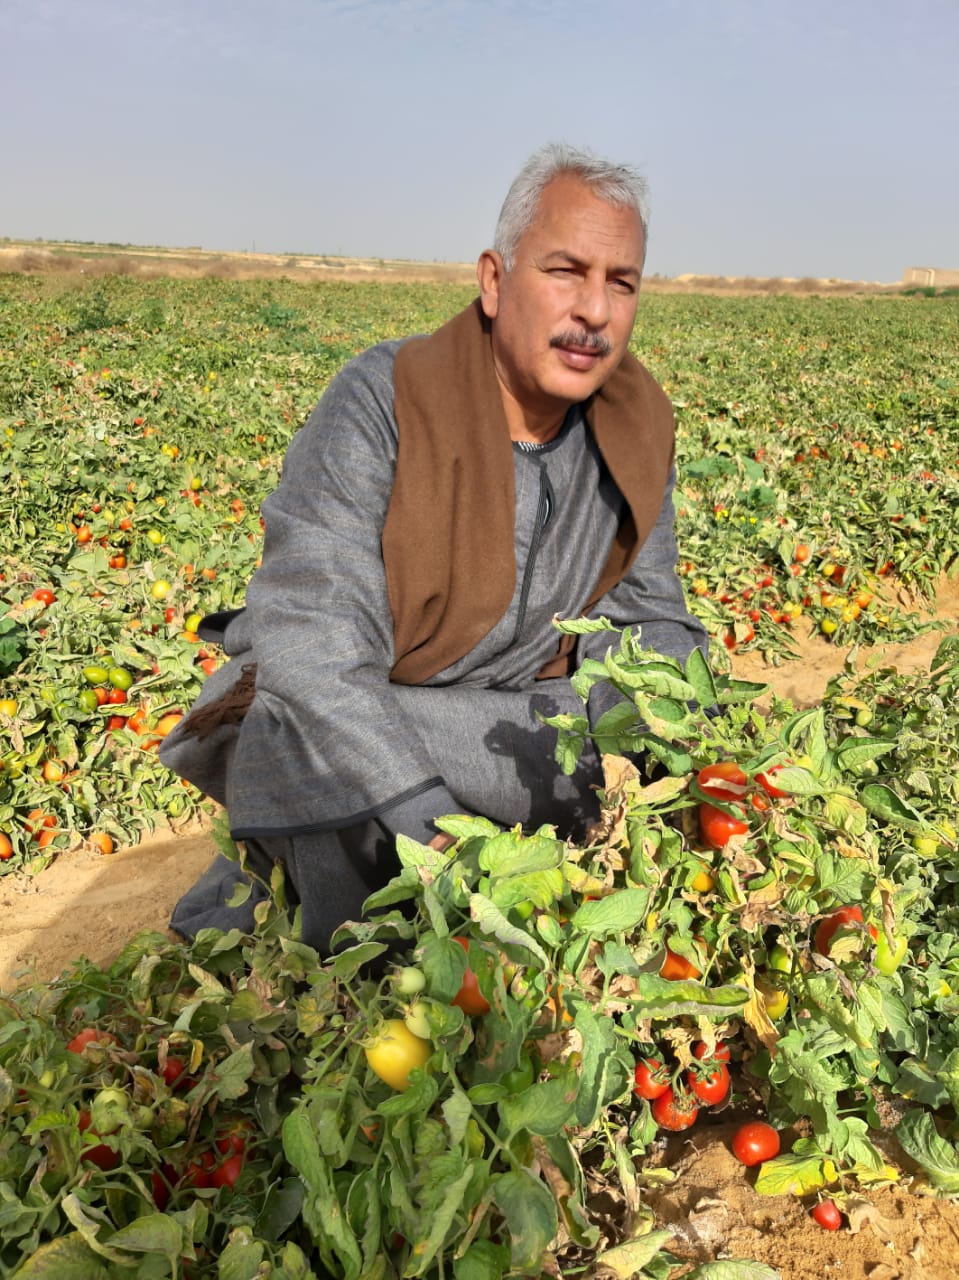 صورة نقيب الفلاحين : إرتفاع اسعار الطماطم في الخمسة عشر يوما الماضيه كان بنسبة 40%